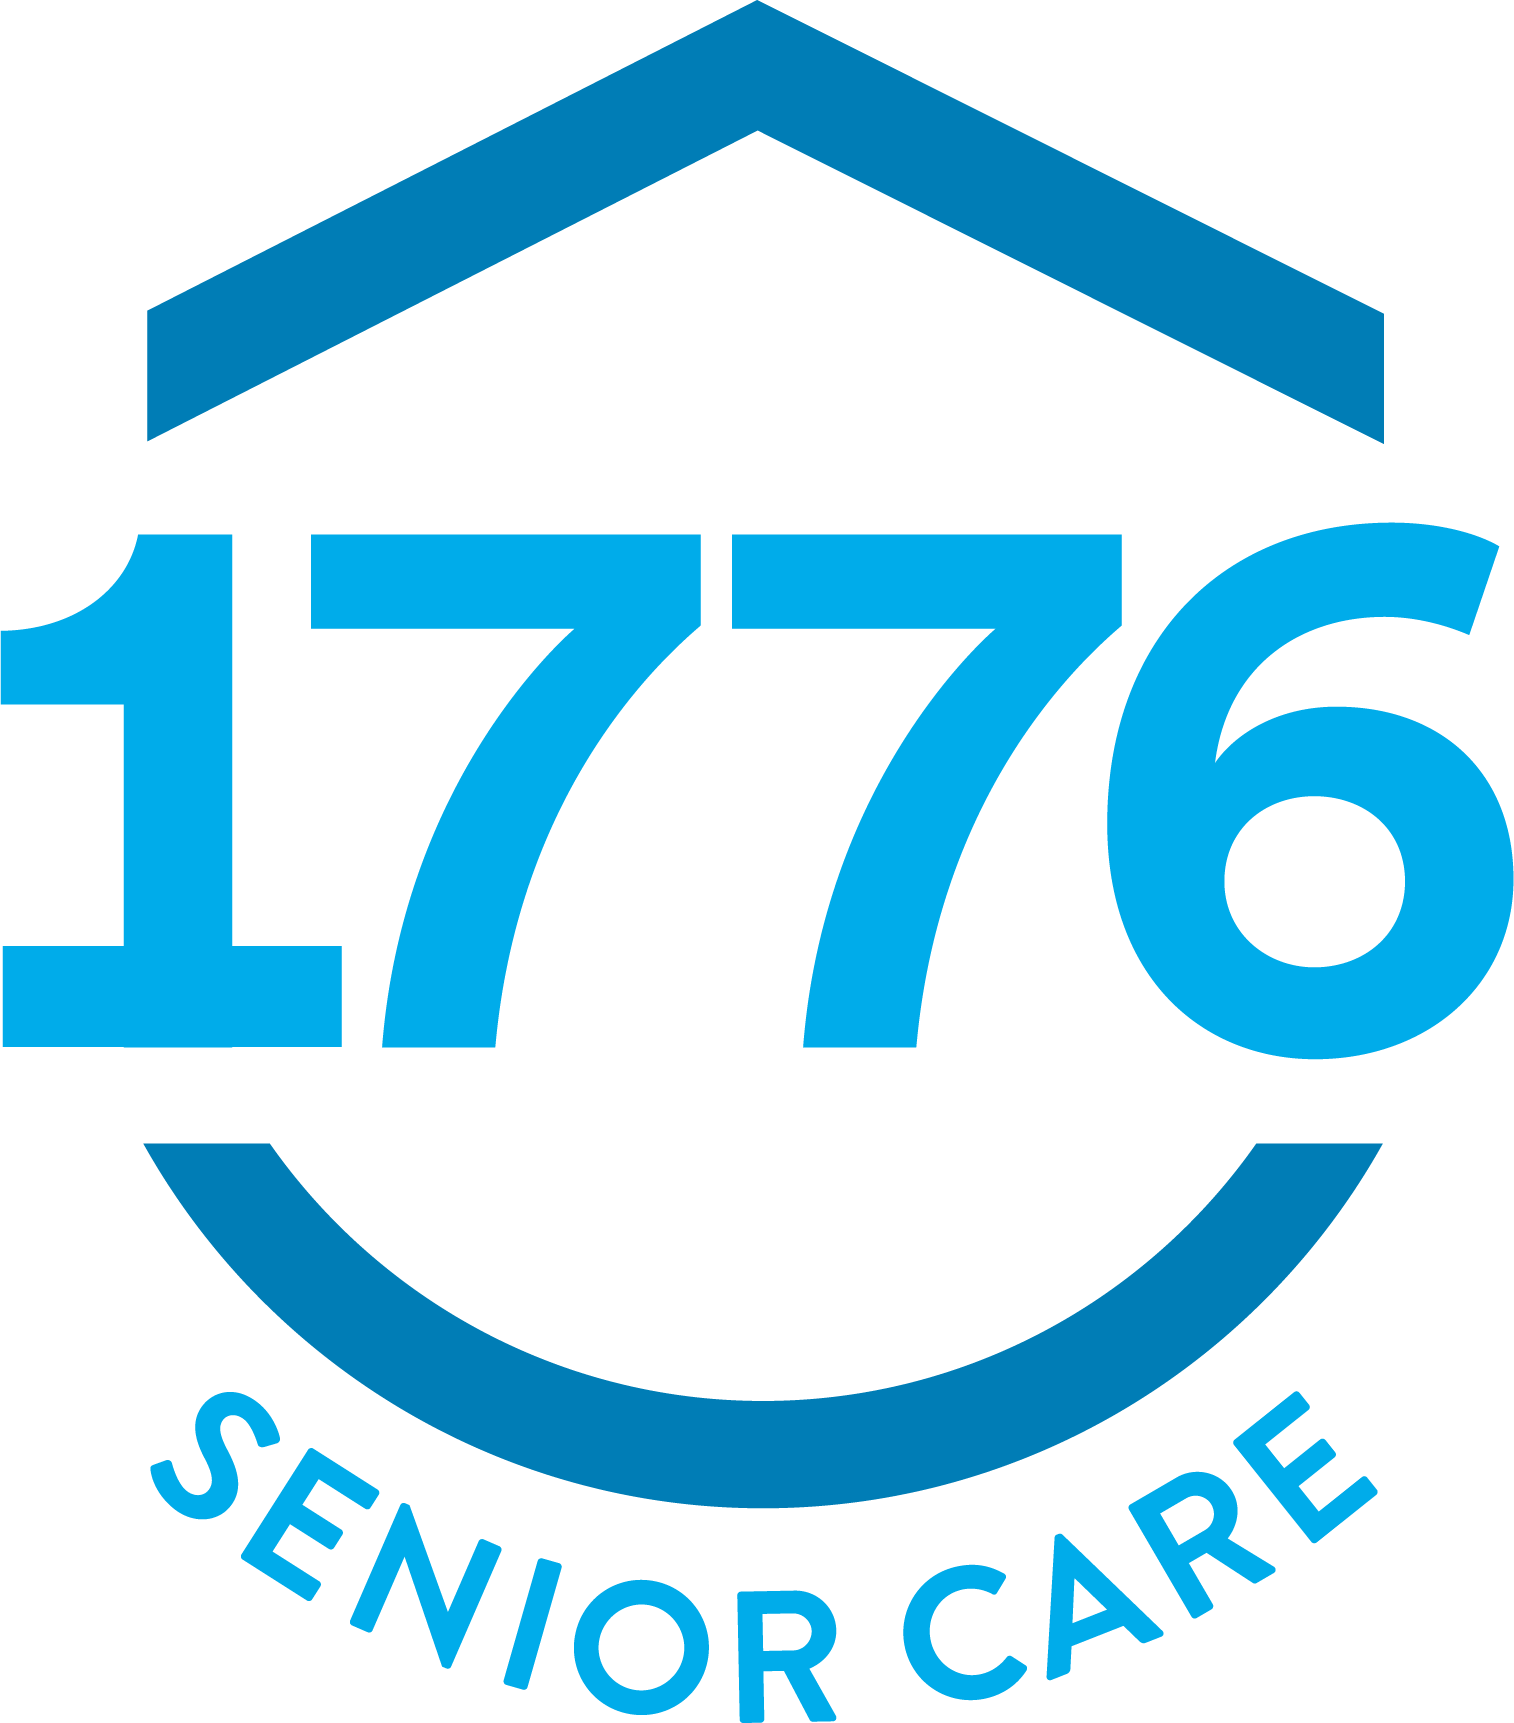 1776 Senior Care